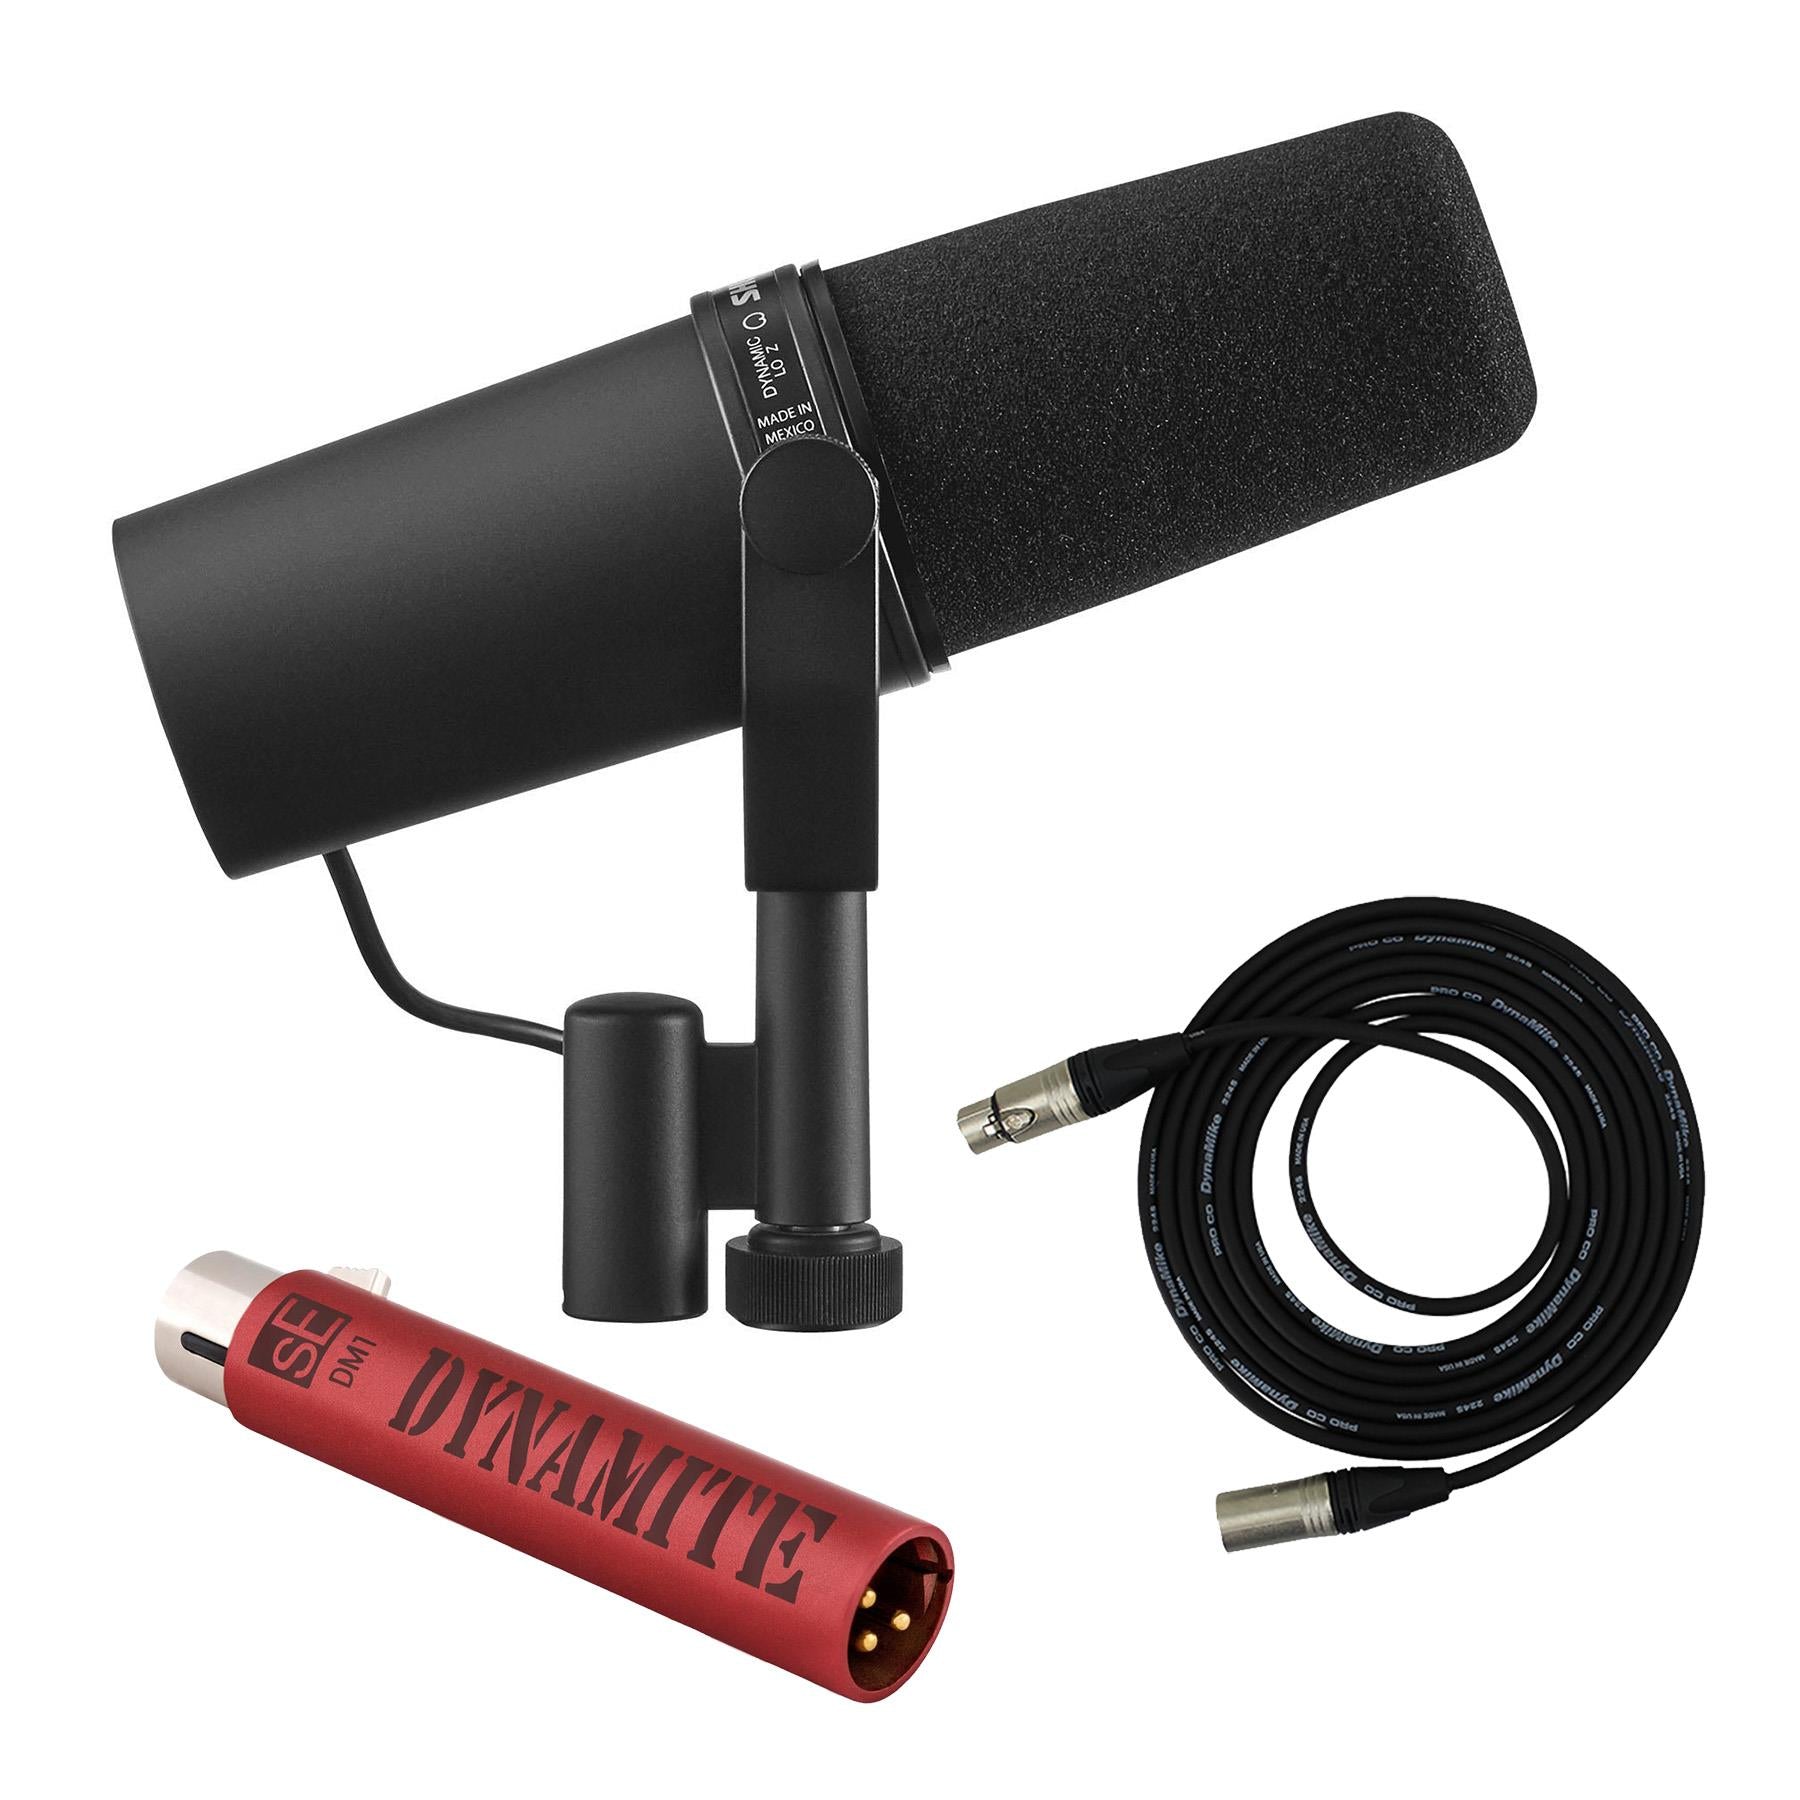 Shure SM7B Dynamic Microphone Bundle with sE Electronics DM1 & Pro 